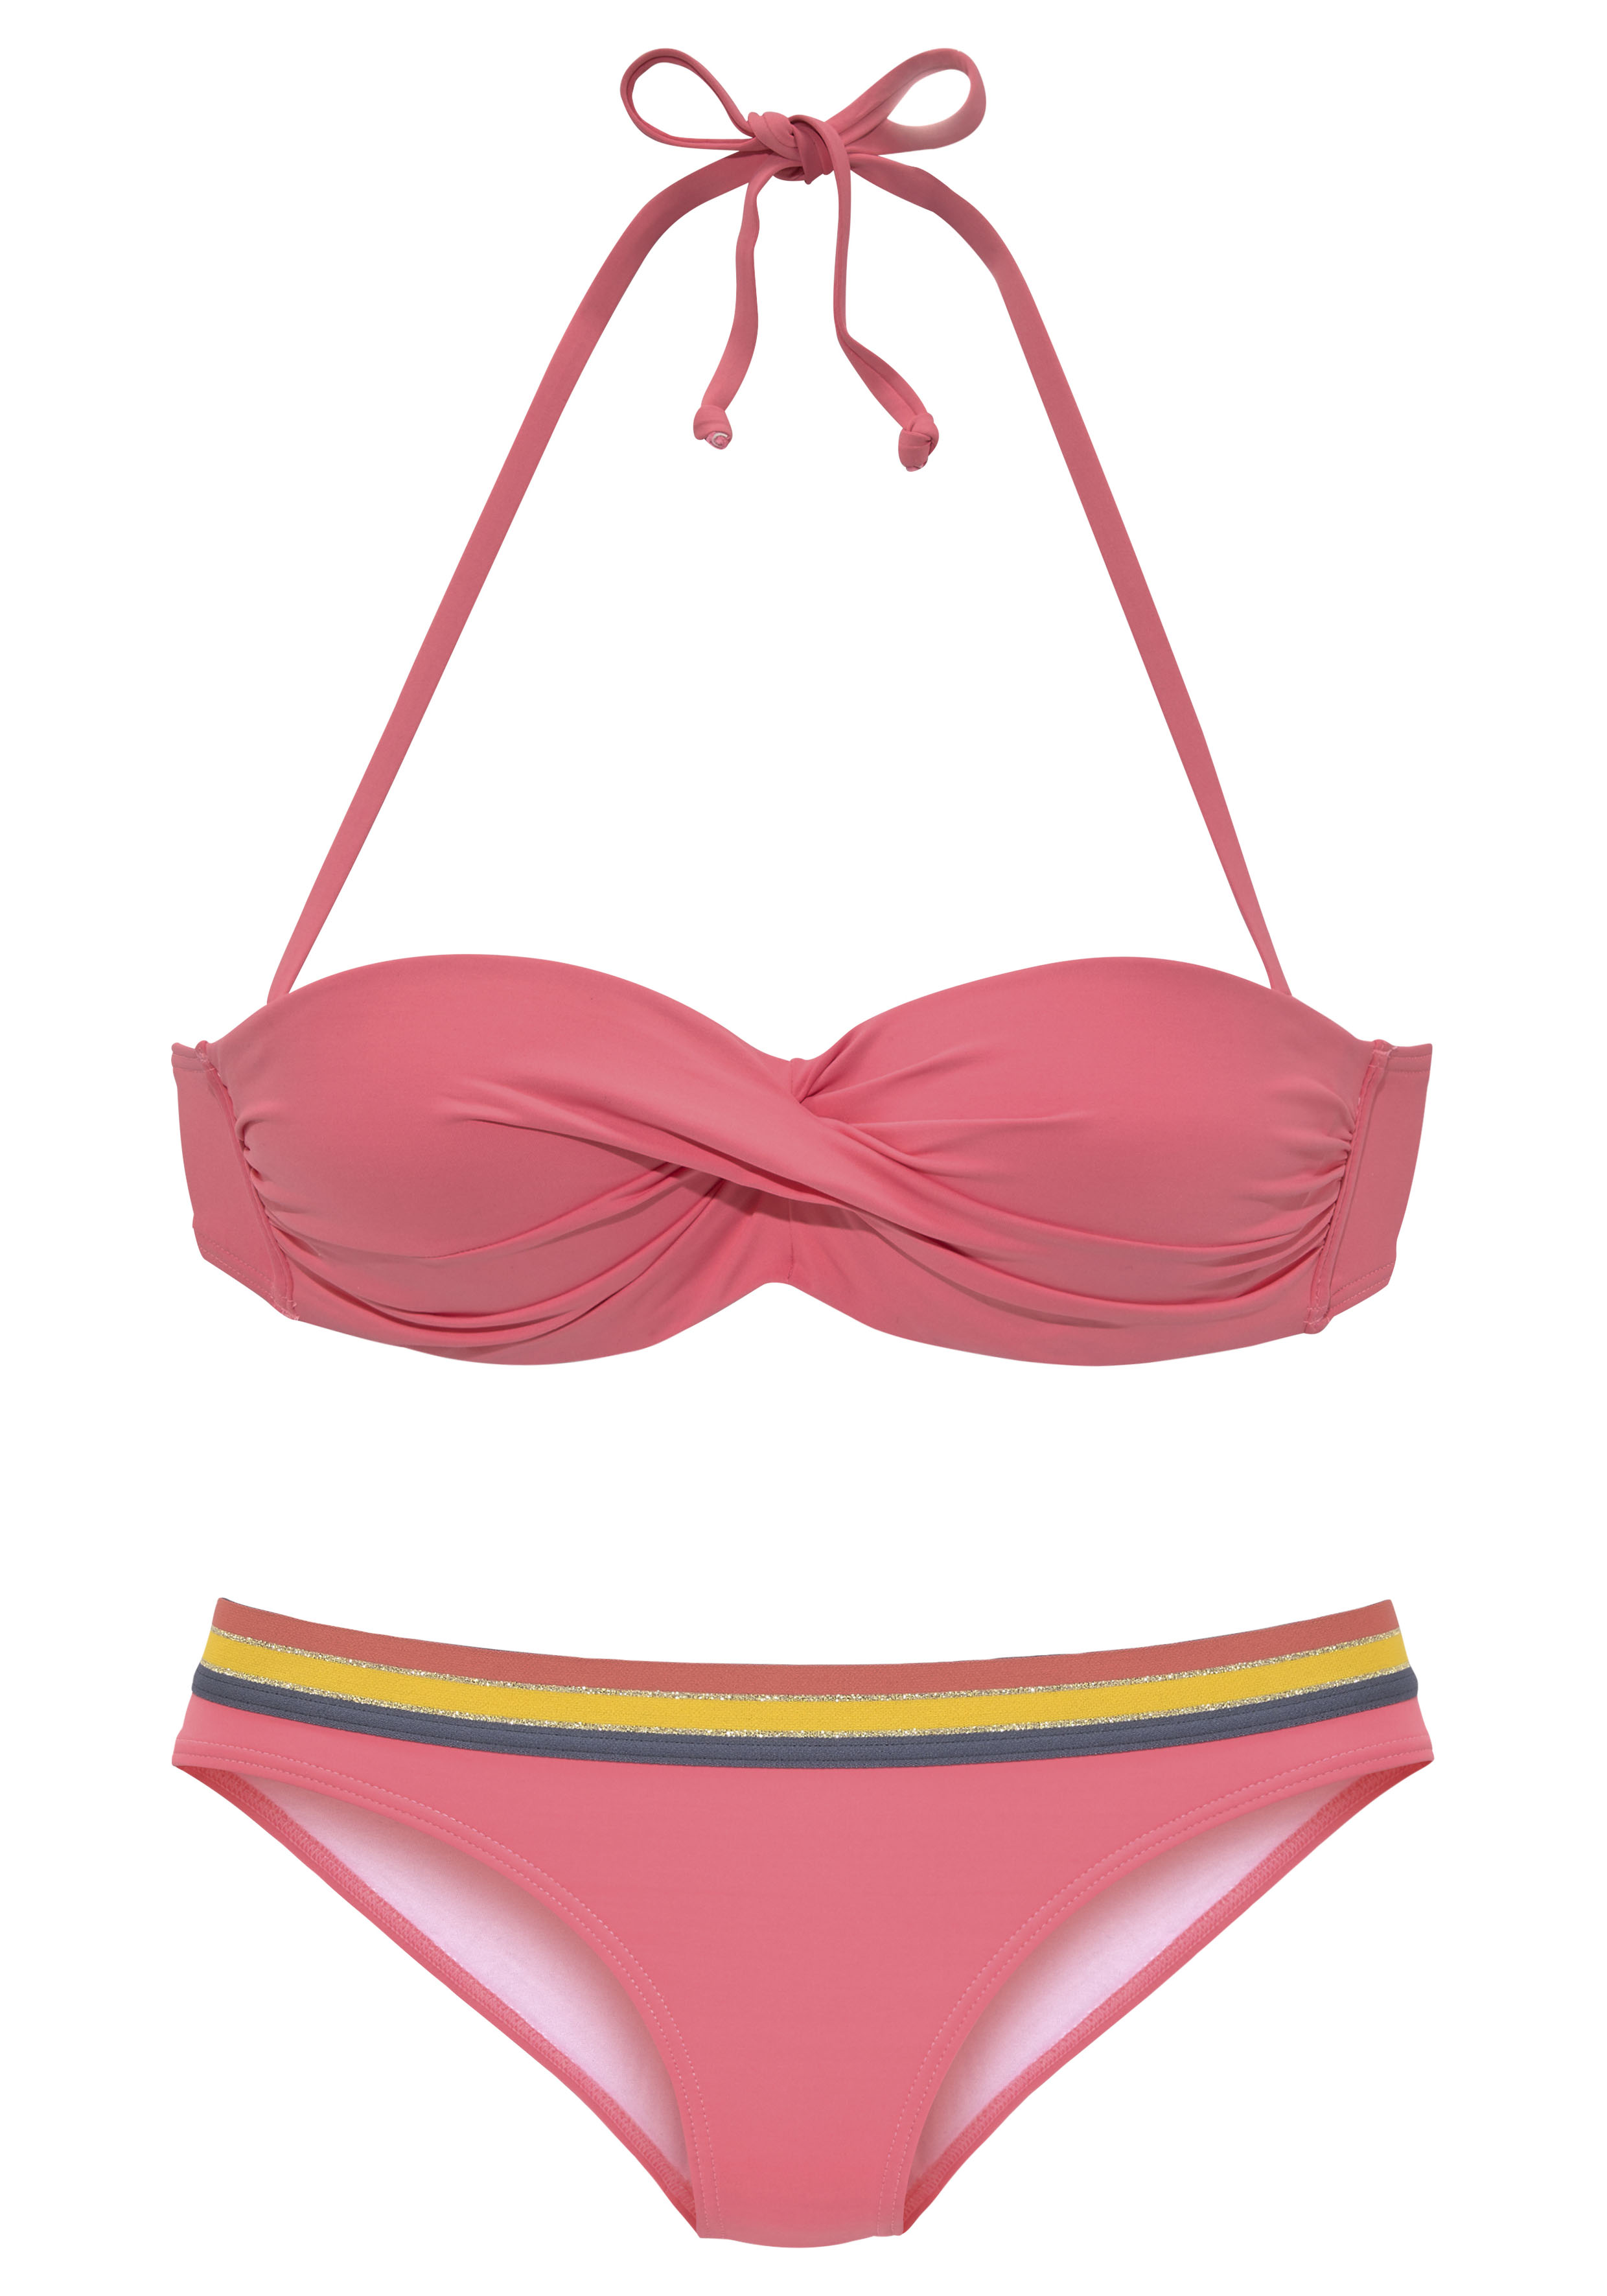 Odzież Komplety bikini VIVANCE Bikini w kolorze Koralowym 